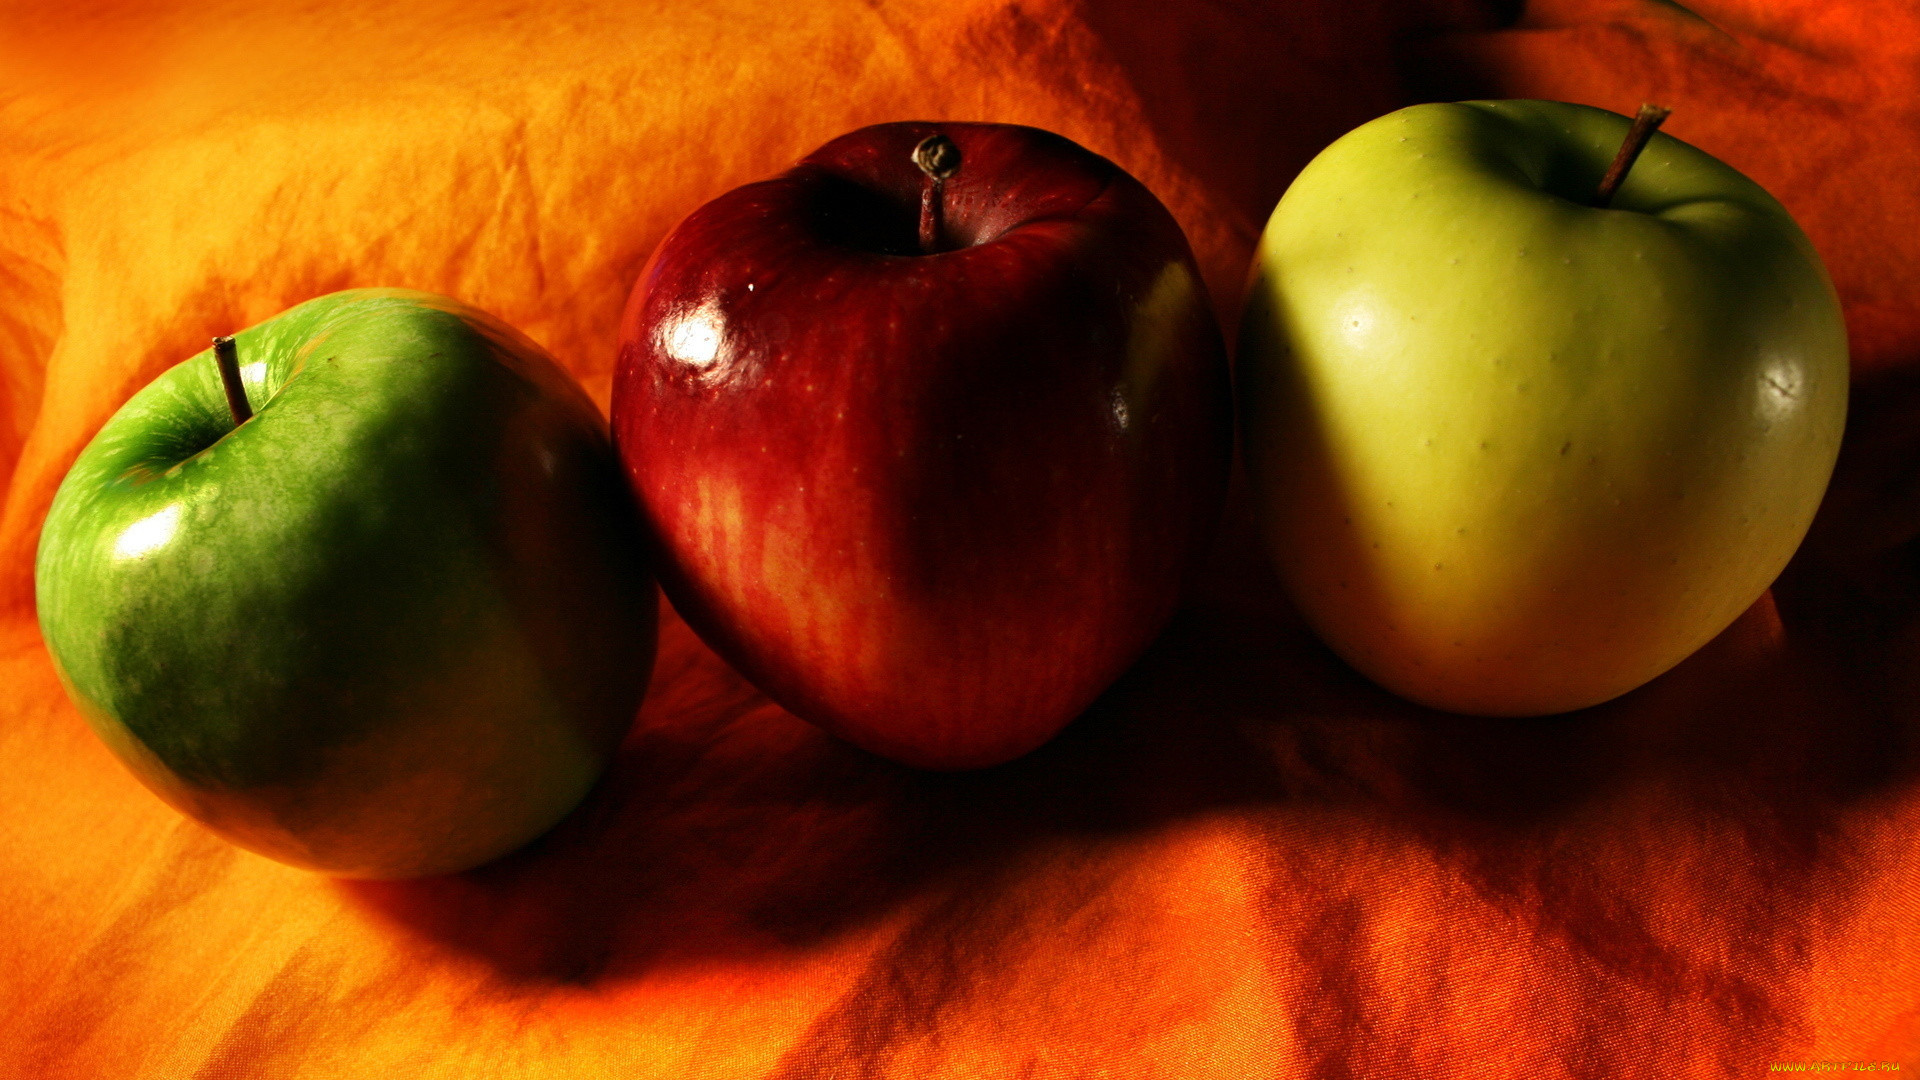 Включи 3 яблока. Красивое яблоко. Яблоко на столе. Разные яблоки. Яблоки красные желтые зеленые.